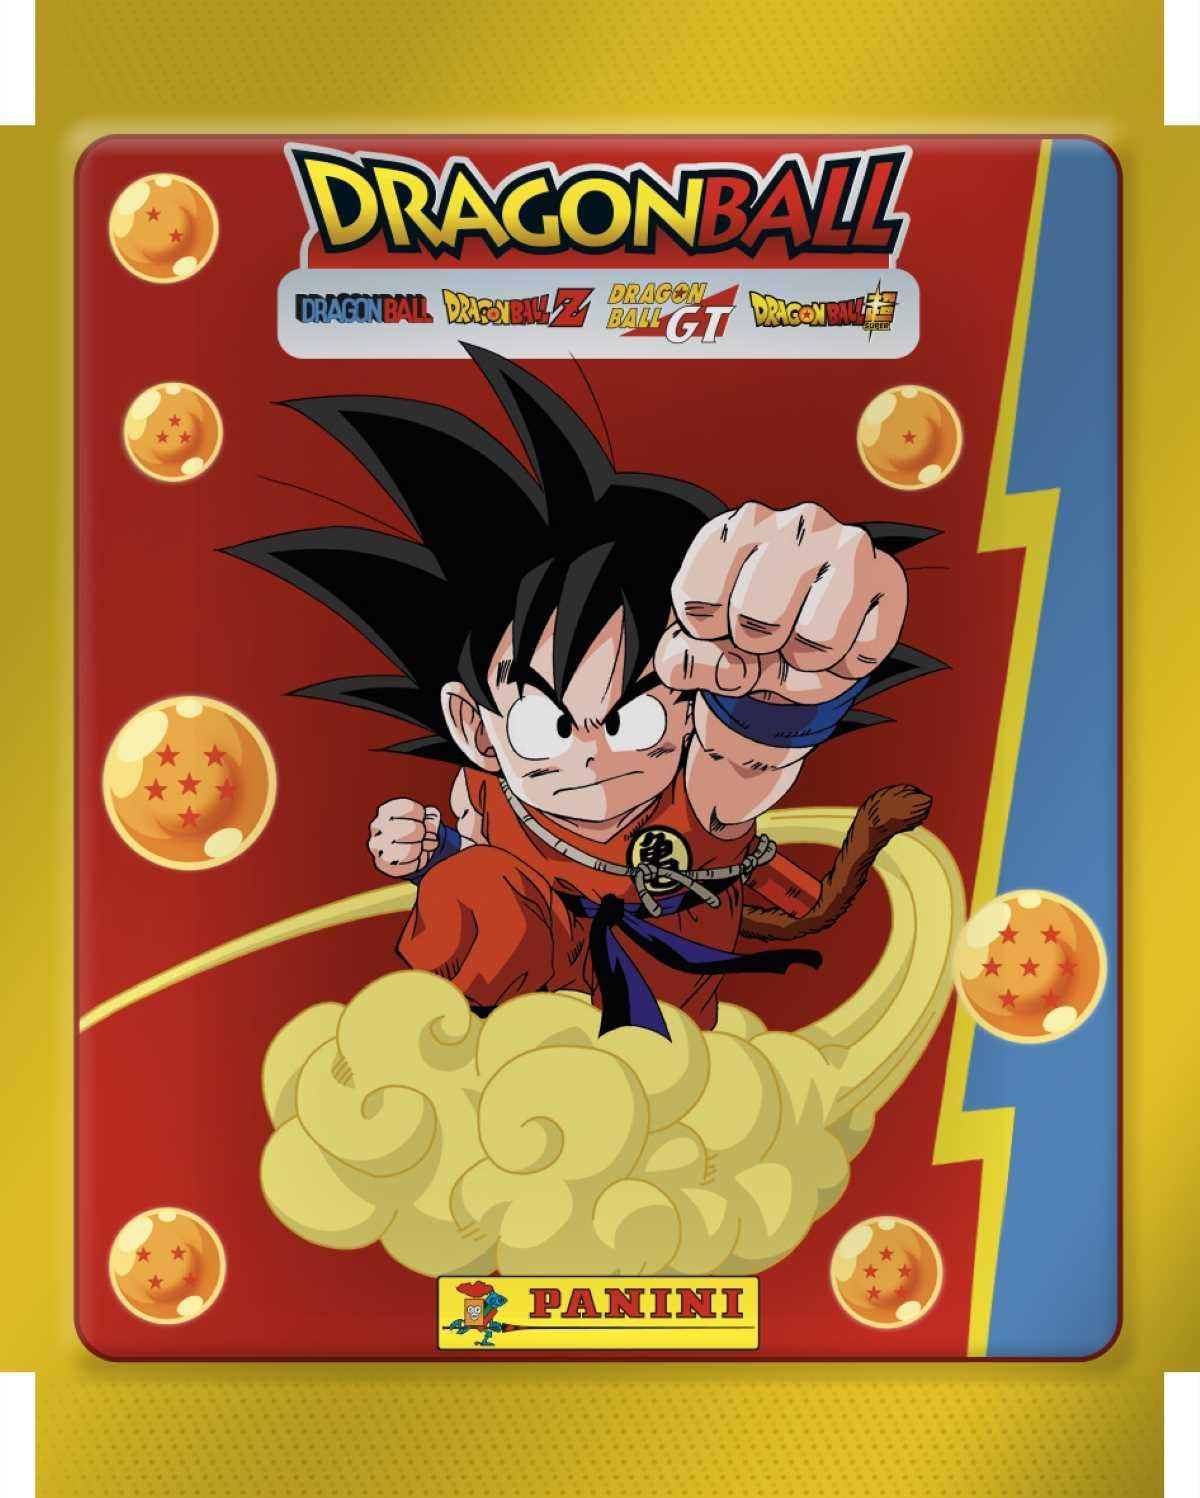 Dragon Ball Universal Sticker - Box-Bundle